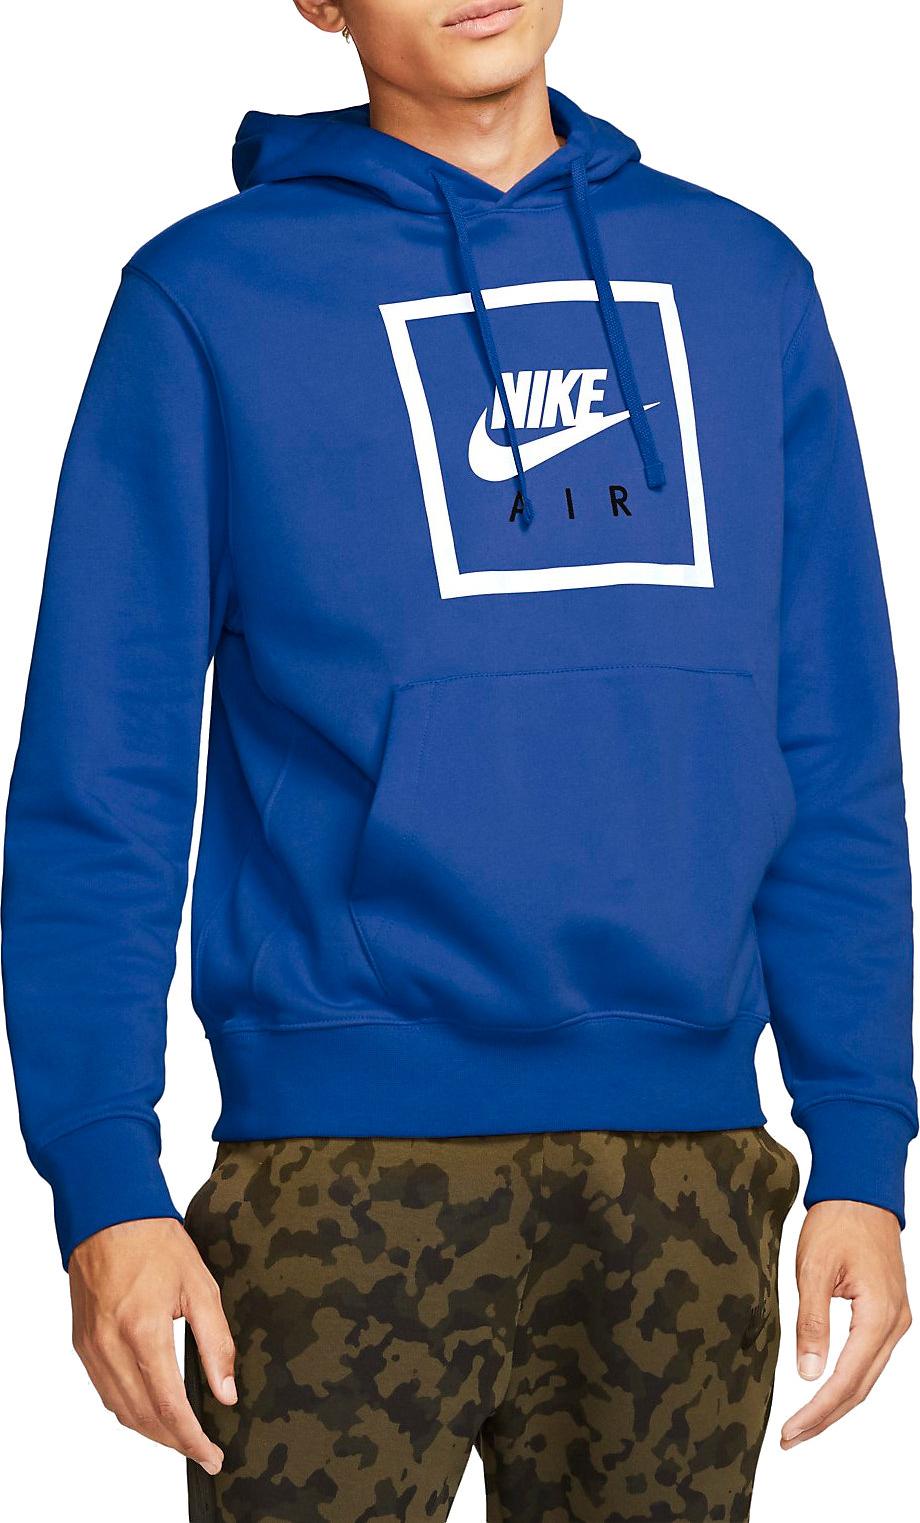 Hooded sweatshirt Nike M NSW PO HOODIE AIR 5